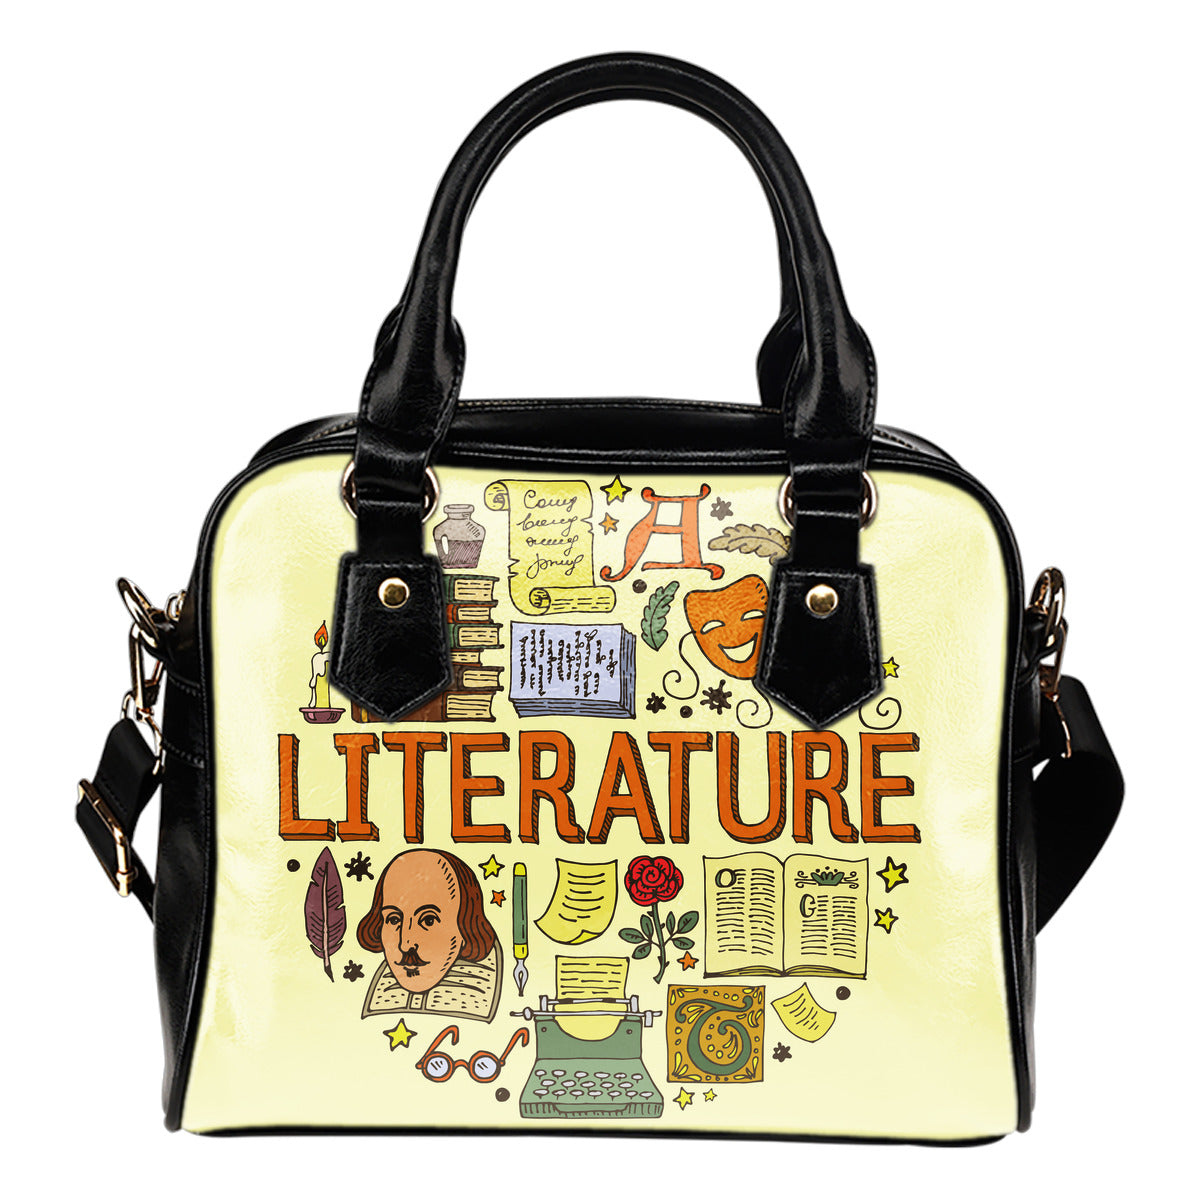 Literature Handbag